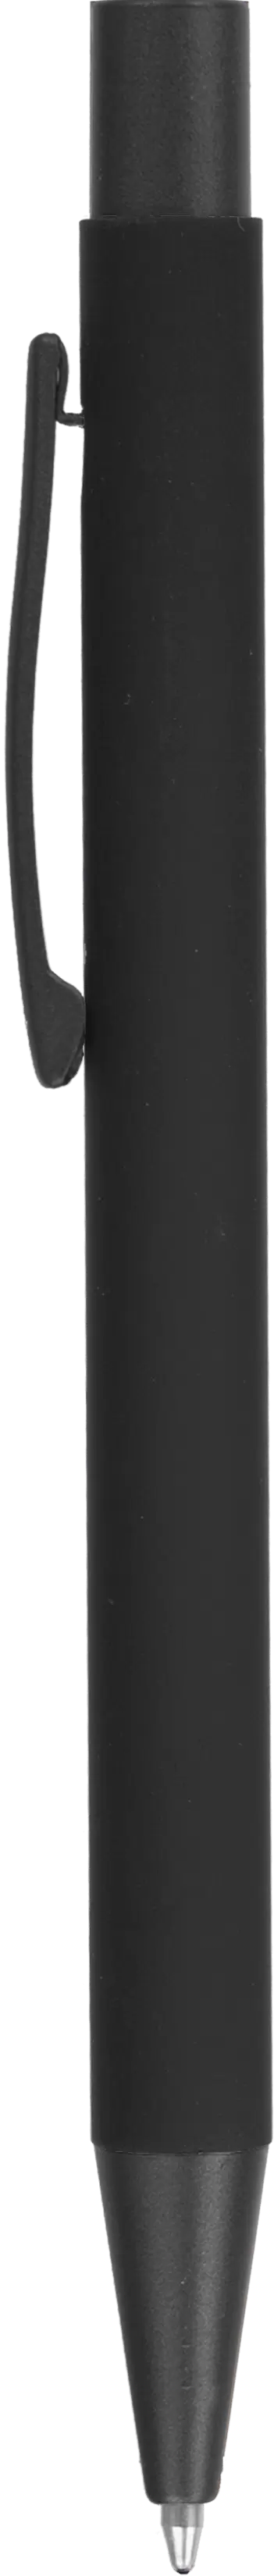 Ручка MAX SOFT TITAN Черная полностью 1110-88